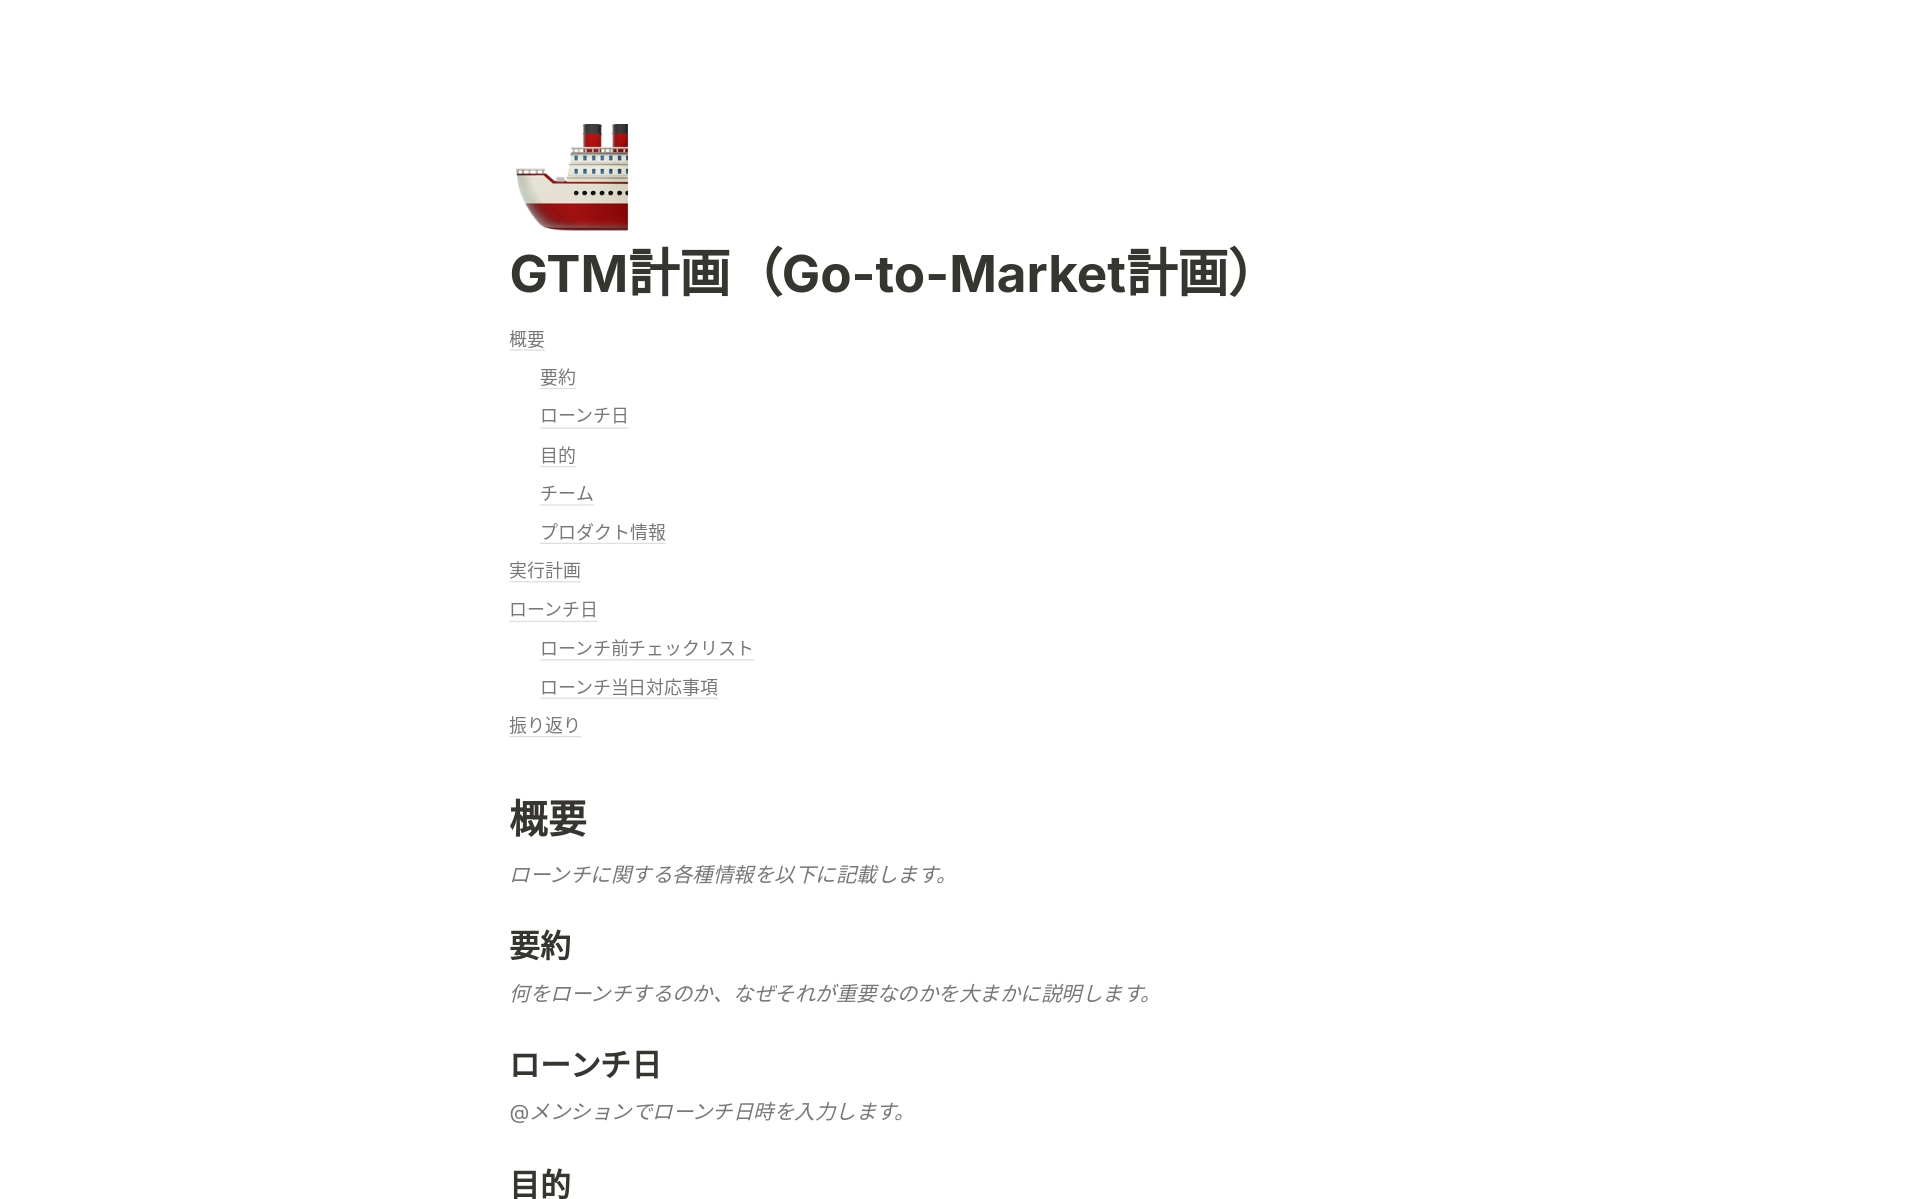 GTM計画（Go-to-Market計画）は、プロダクトをユーザーに届けるためのすべての要素について、部門横断的なチームを調整するものです。